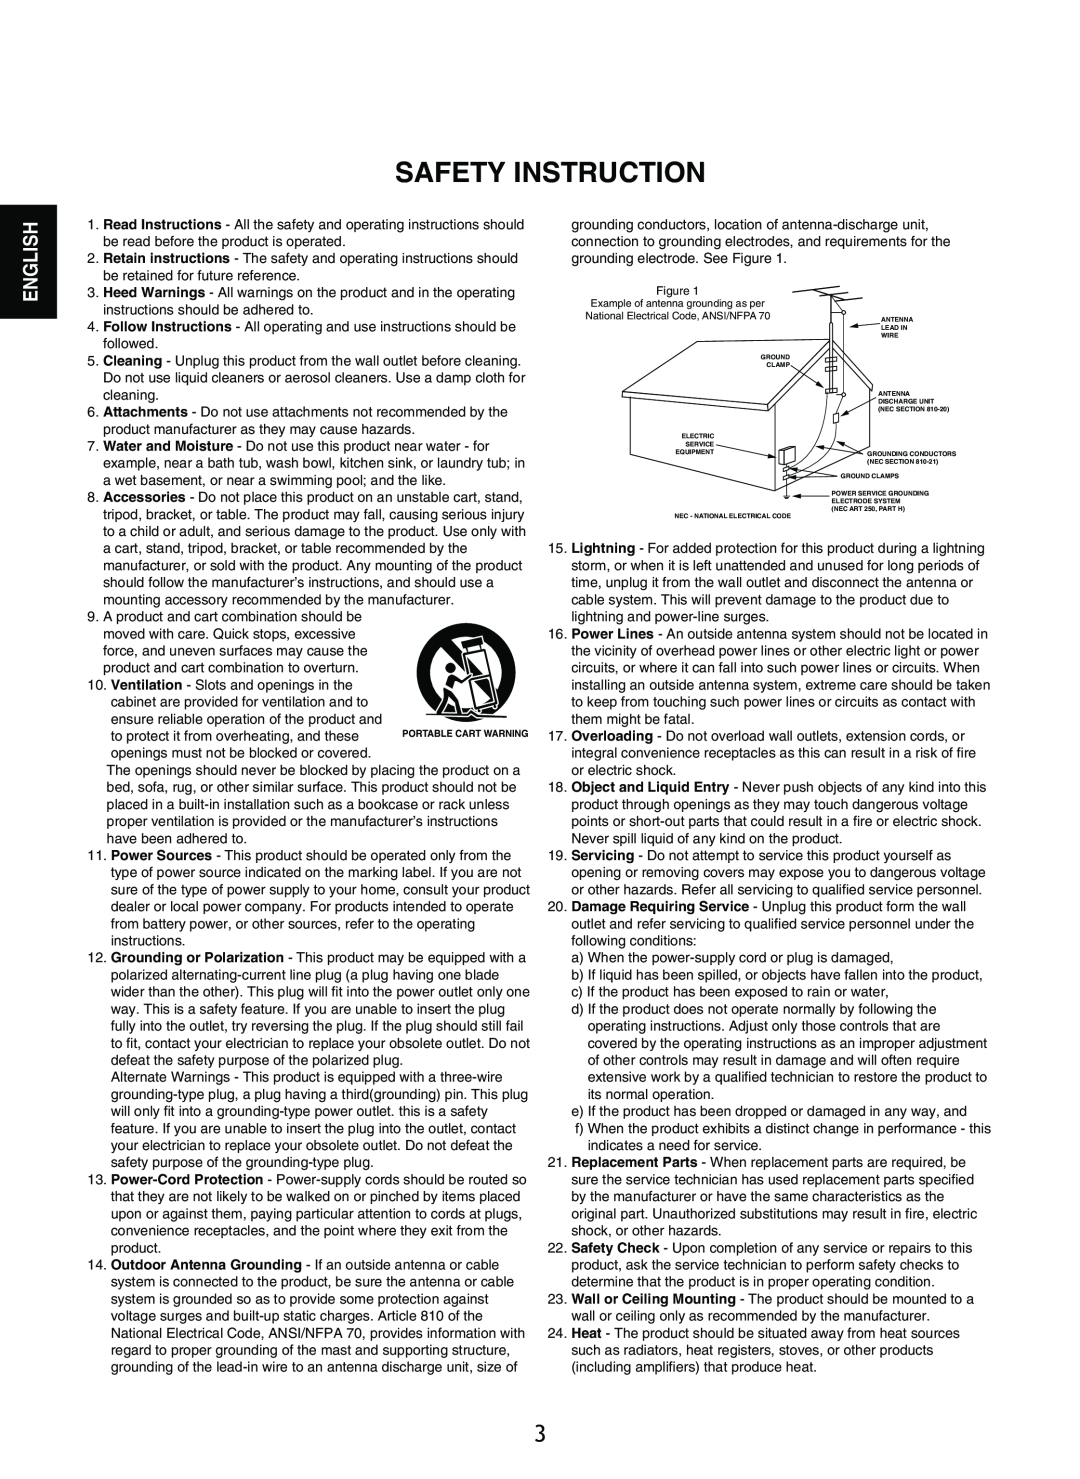 Sherwood R-965 manual Safety Instruction, English 